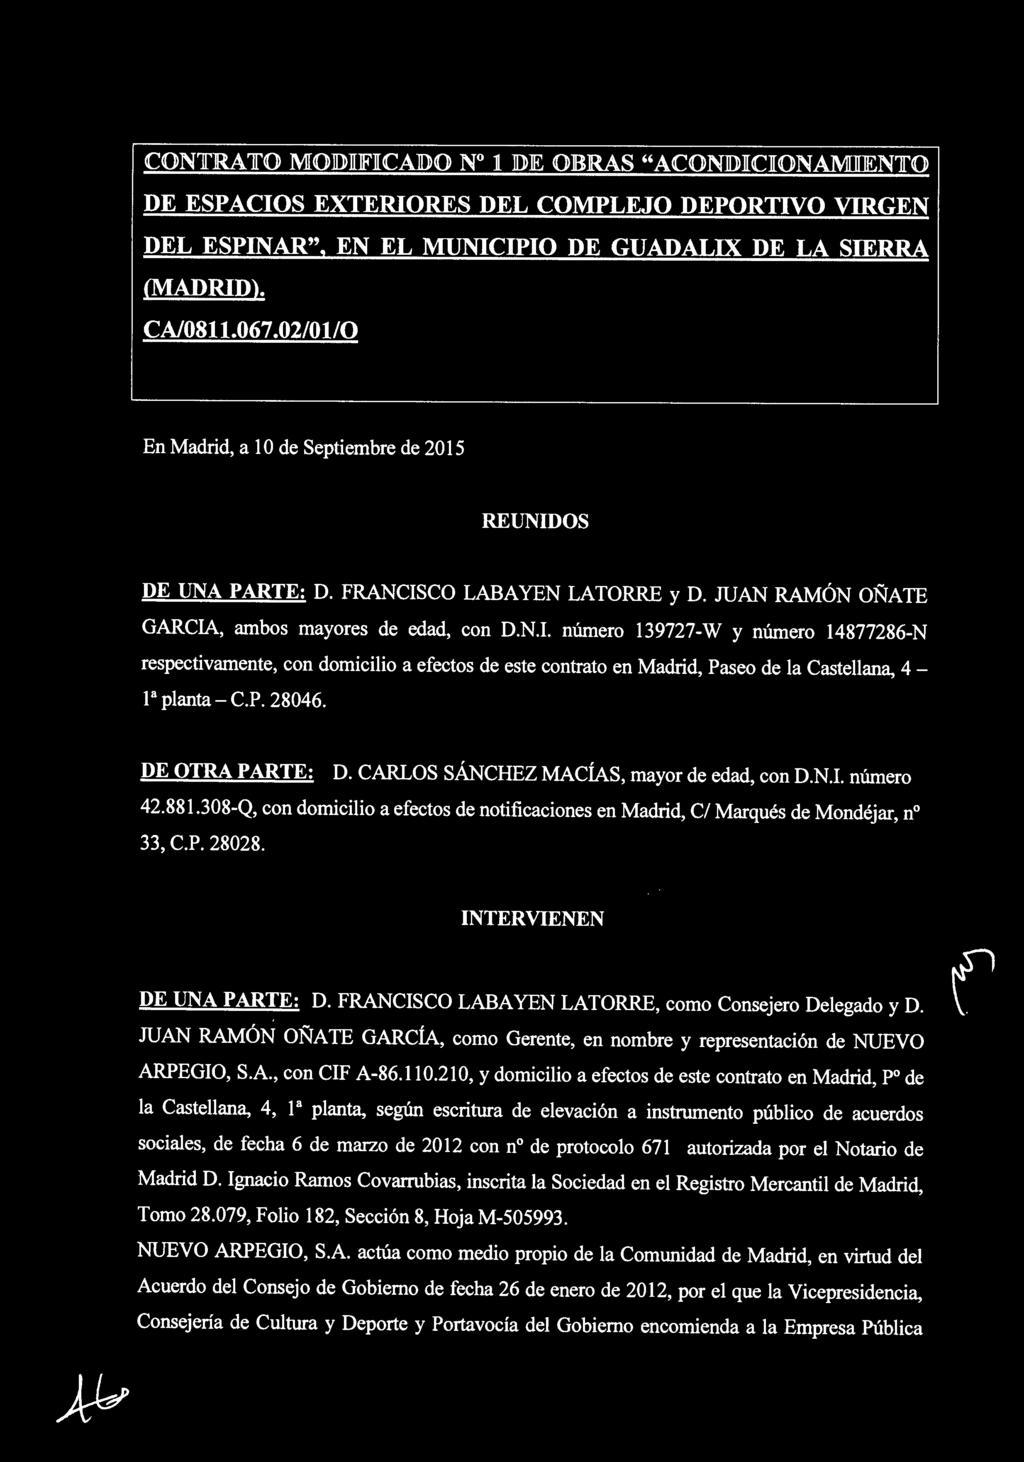 P. 28046. DE OTRA PARTE: D. CARLOS SÁNCHEZ MACÍAS, mayor de edad, con D.N.I. número 42.881.308-Q, con domicilio a efectos de notificaciones en Madrid, C/ Marqués de Mondéjar, nº 33, C.P. 28028.